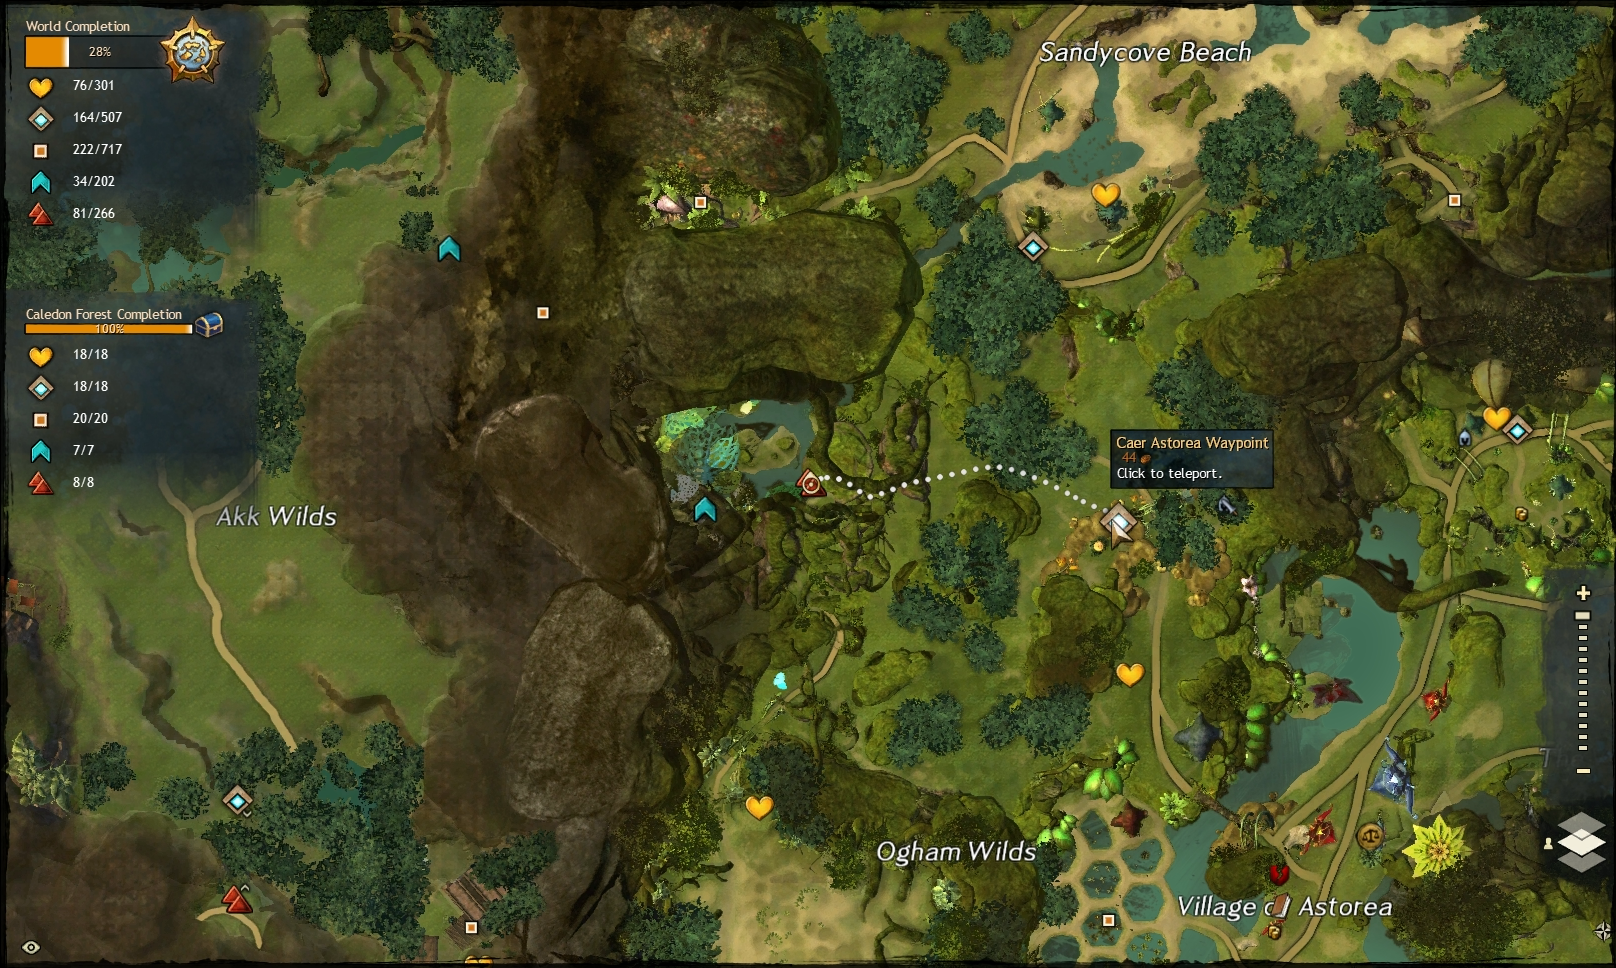 Guild Wars 2 - Vistas in Caledon Forest - 01 Ogham Wilds